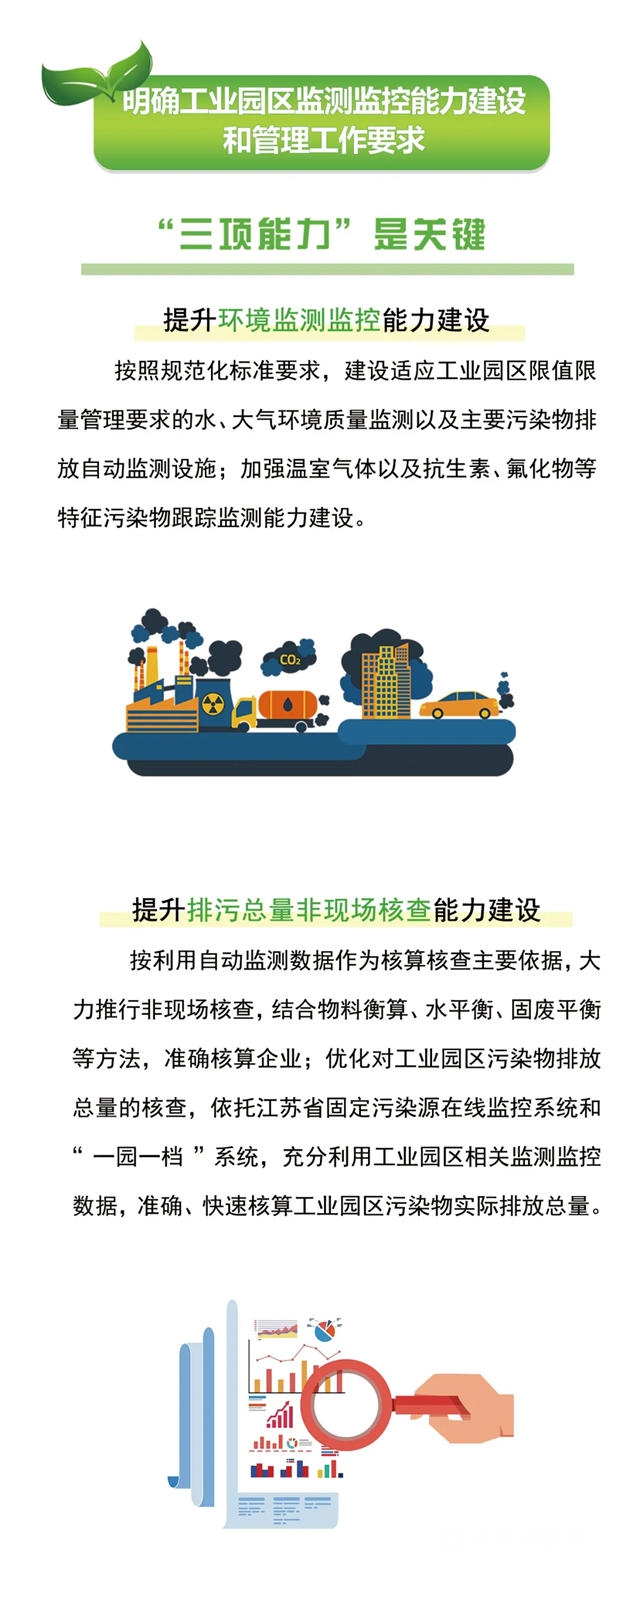 江苏省工业园区（集中区）污染物排放限值限量管理新要求